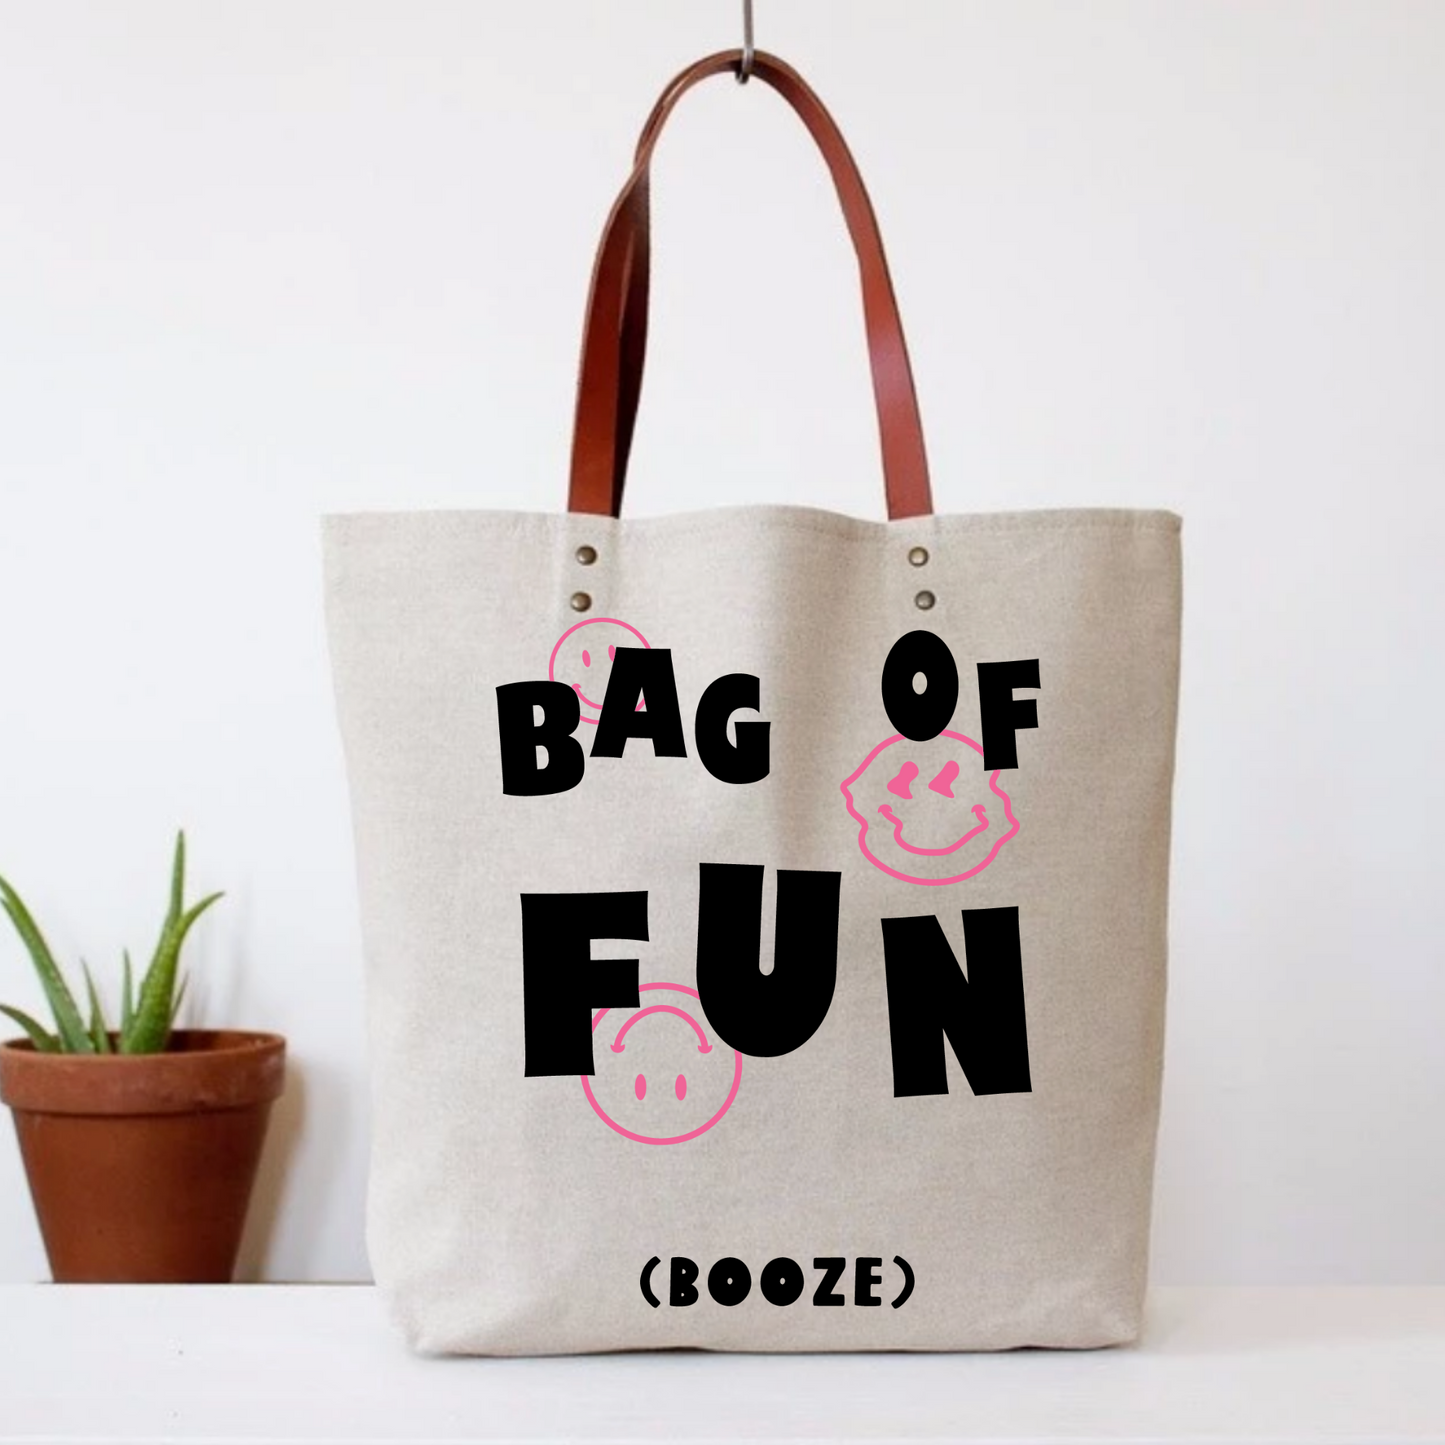 Bag Of Fun (Booze) Tote Bag by Fun Club